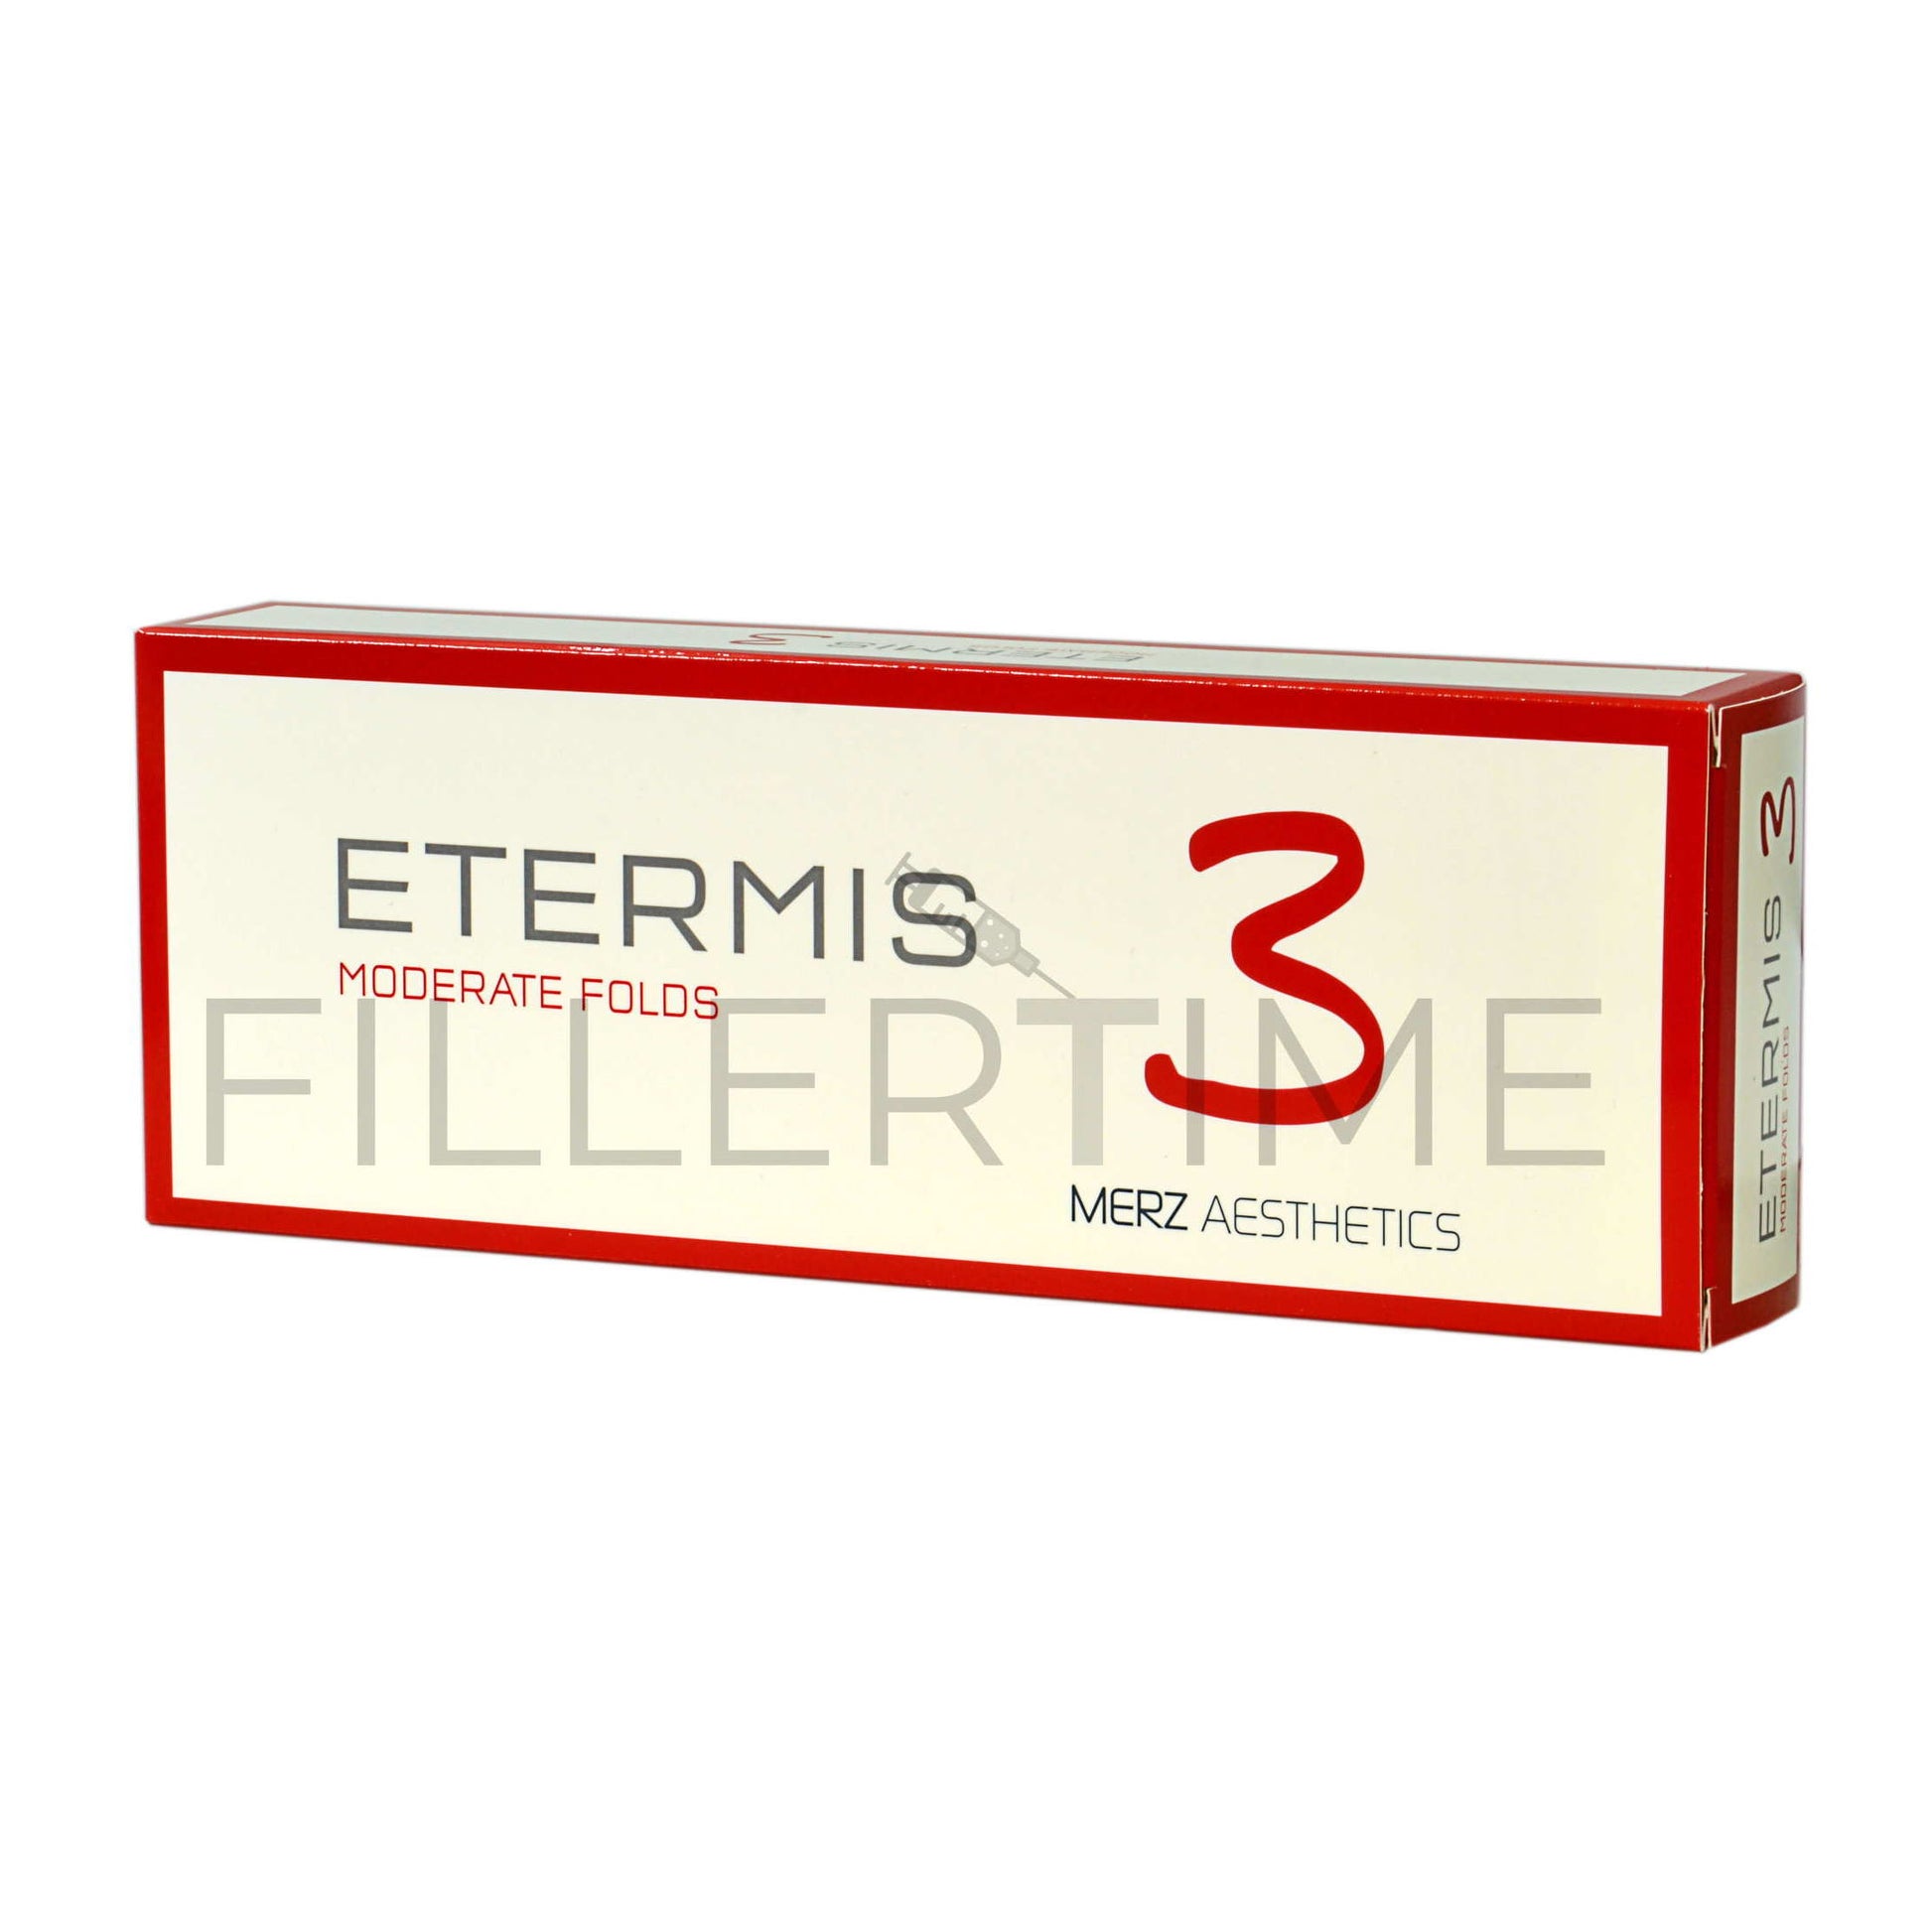 Etermis 3
Contiene 2 siringhe da 1ml
Indicato per correggere le rughe moderate, aumentare il volume delle zone del viso e rimodellare zone del viso.